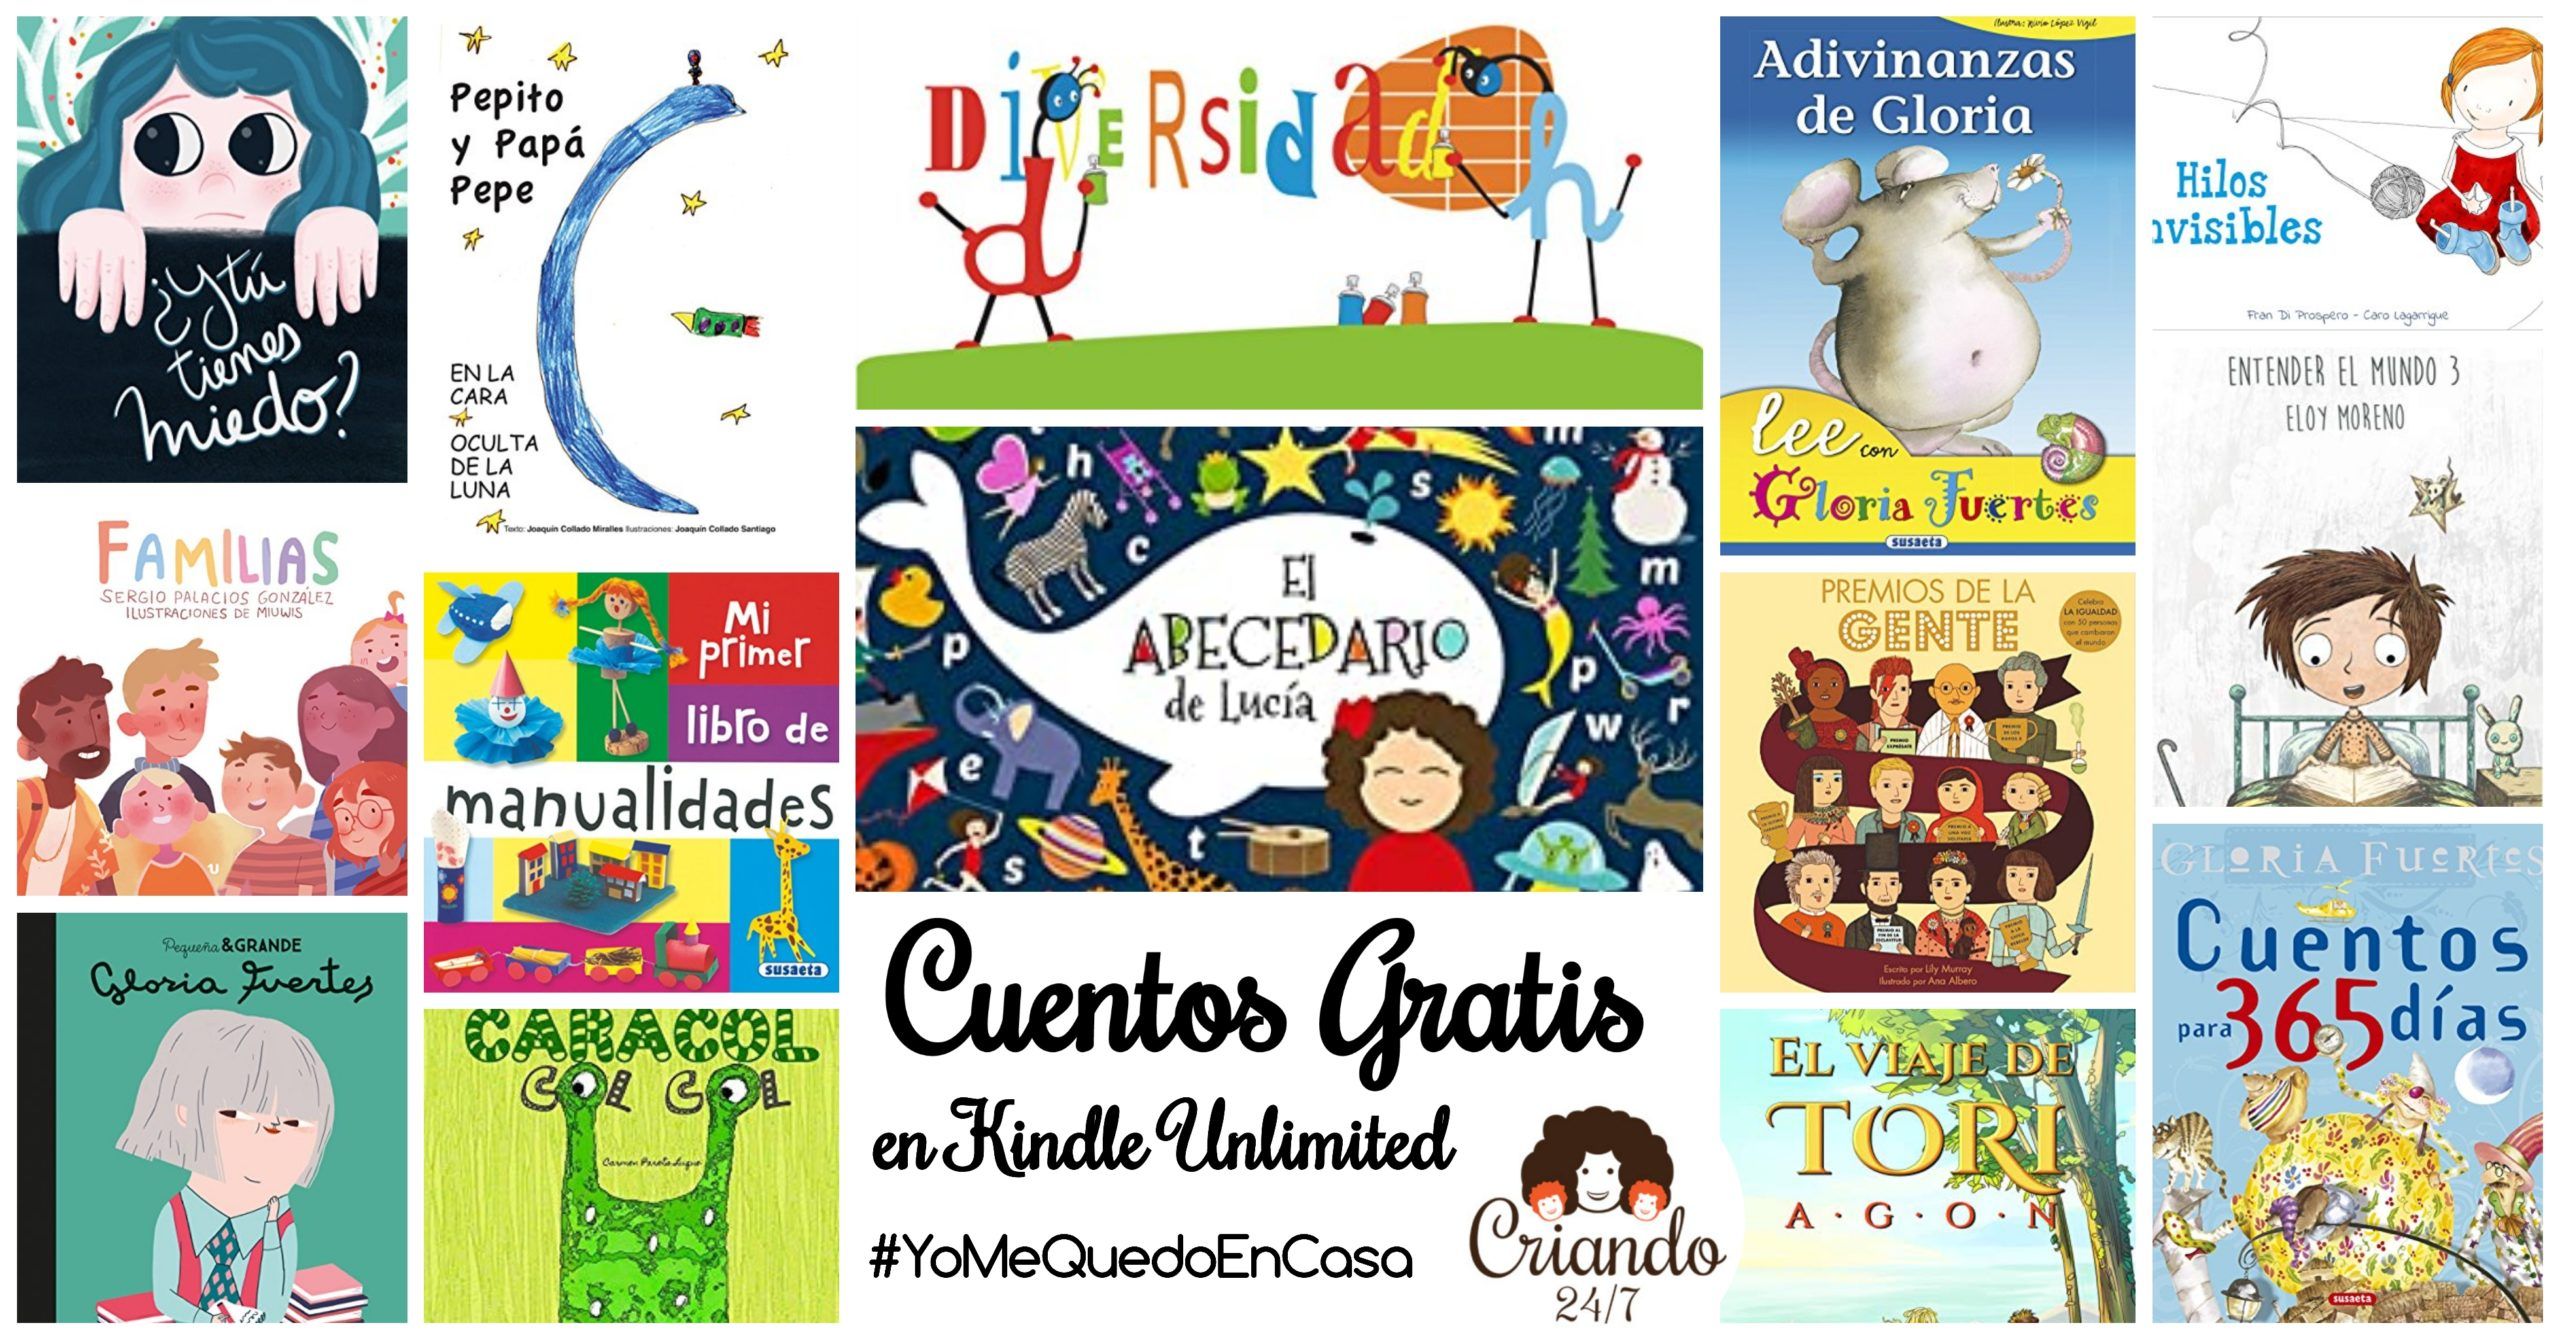 Cuentos GRATIS en Kindle Unlimited #YoMeQuedoEnCasa | CRIANDO 24/7